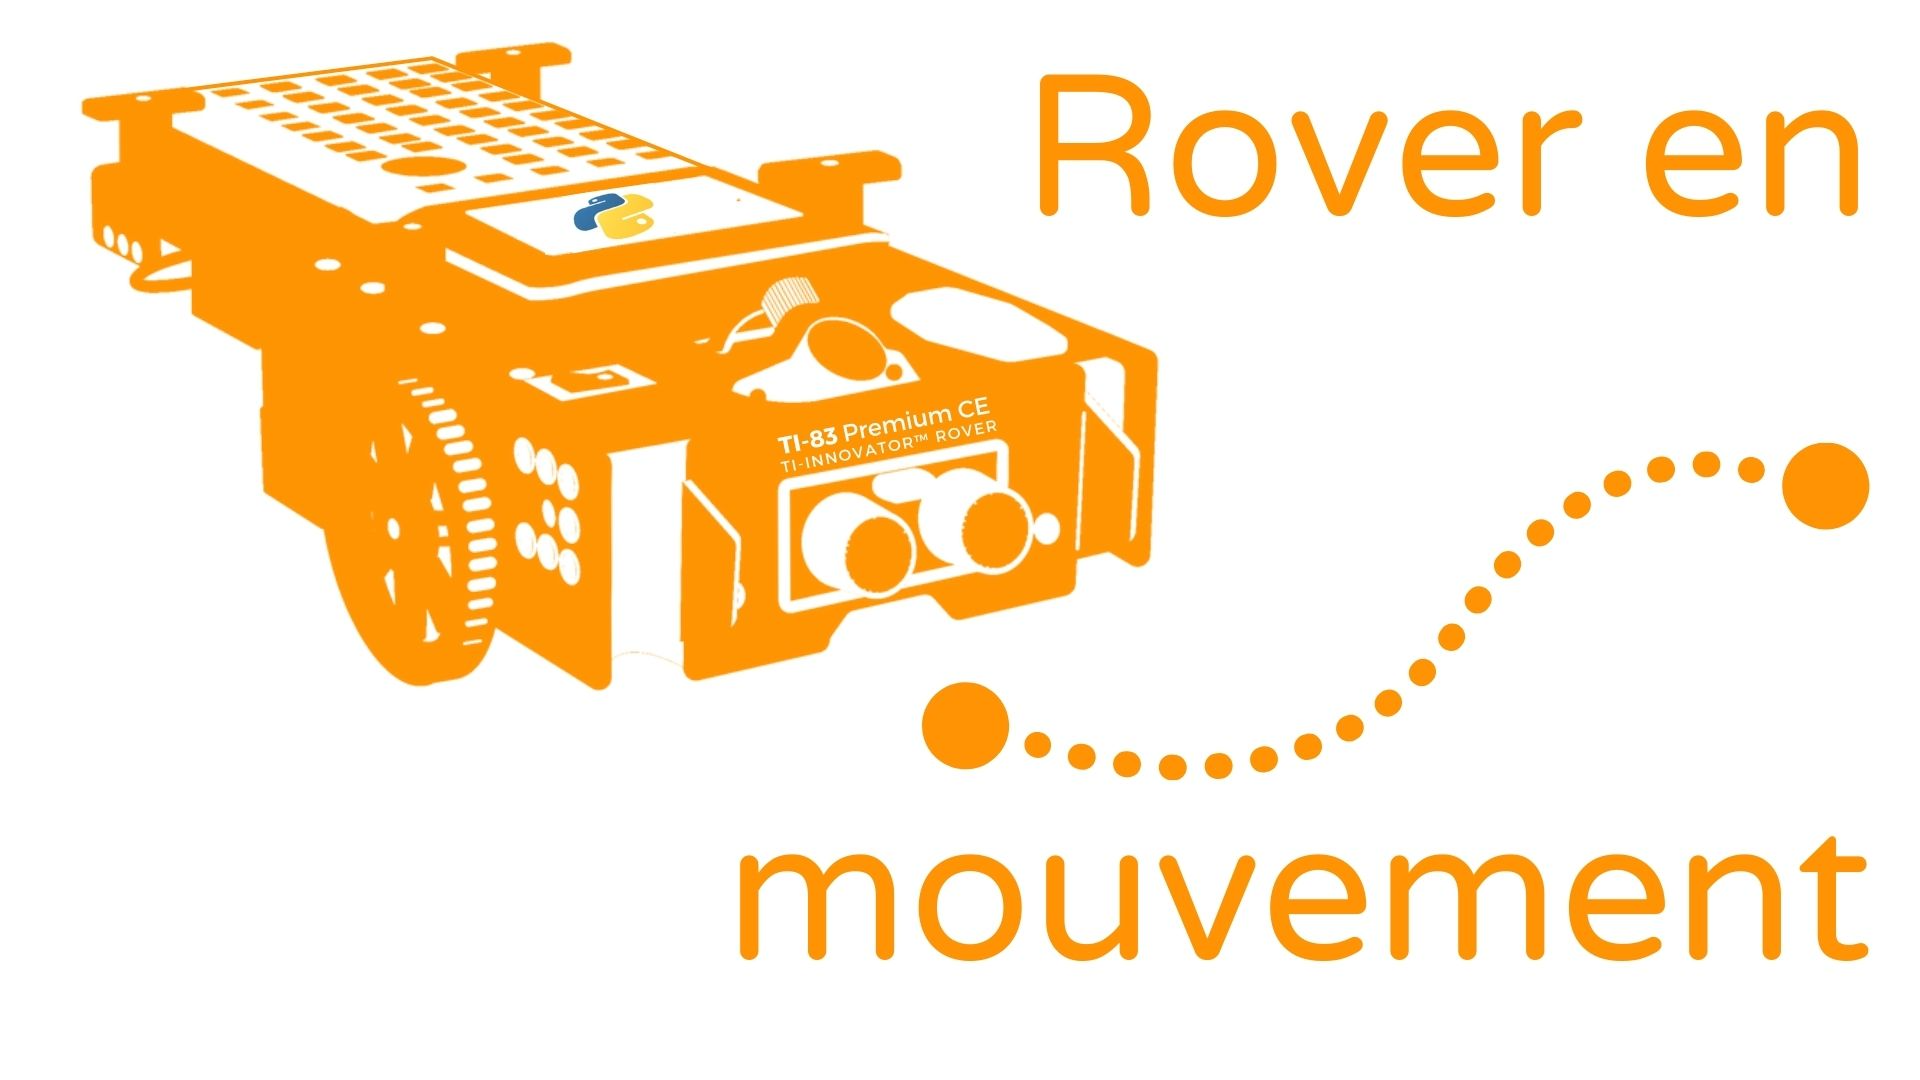 1. Le TI-Innovator™ Rover en mouvement